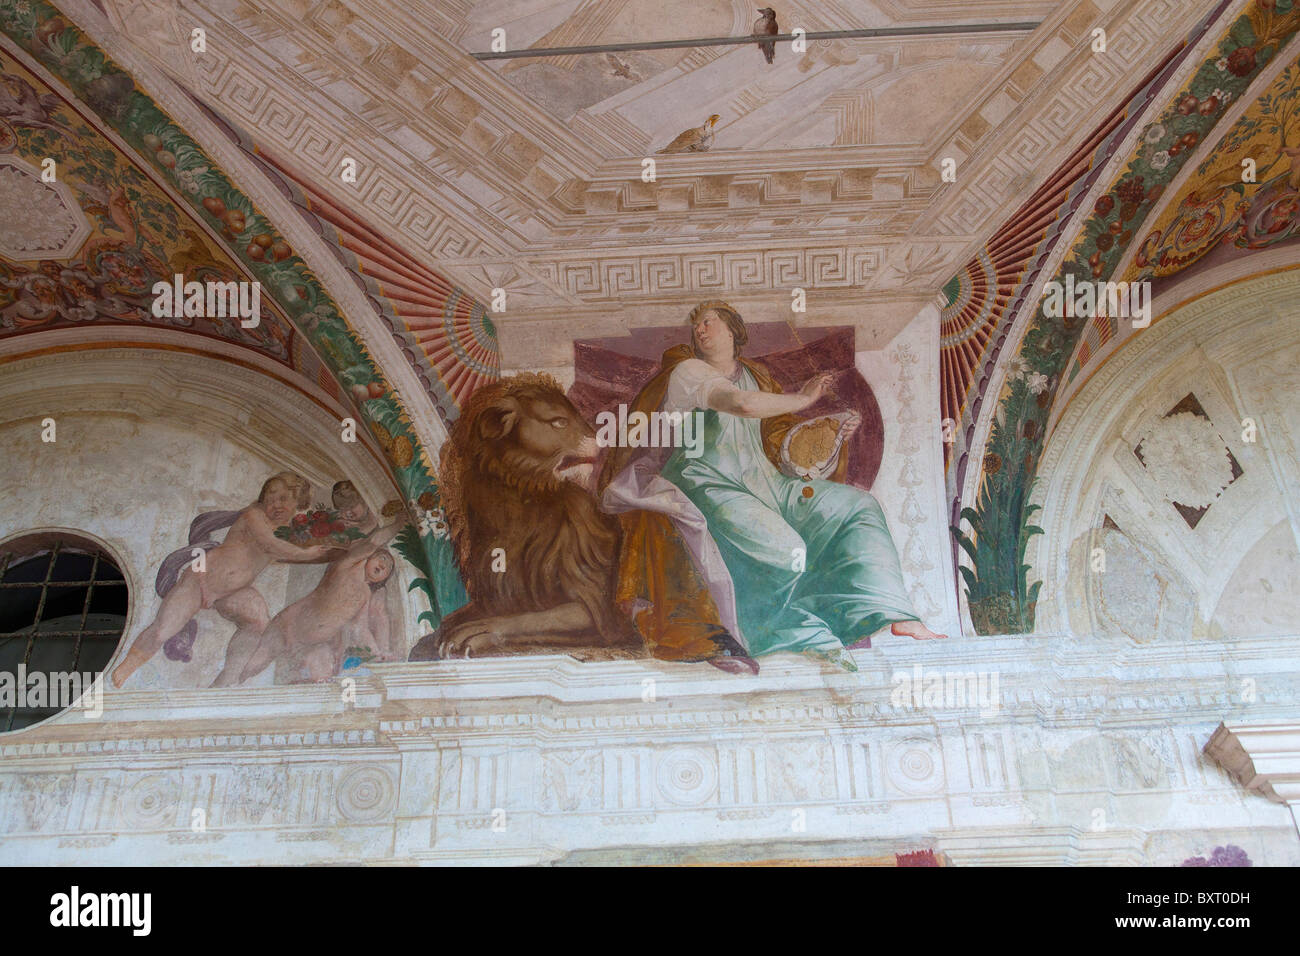 Balcony with fresco painted by Agostino Tassi, Palazzina Montalto, Villa Lante, Bagnaia, Lazio, Italy Stock Photo